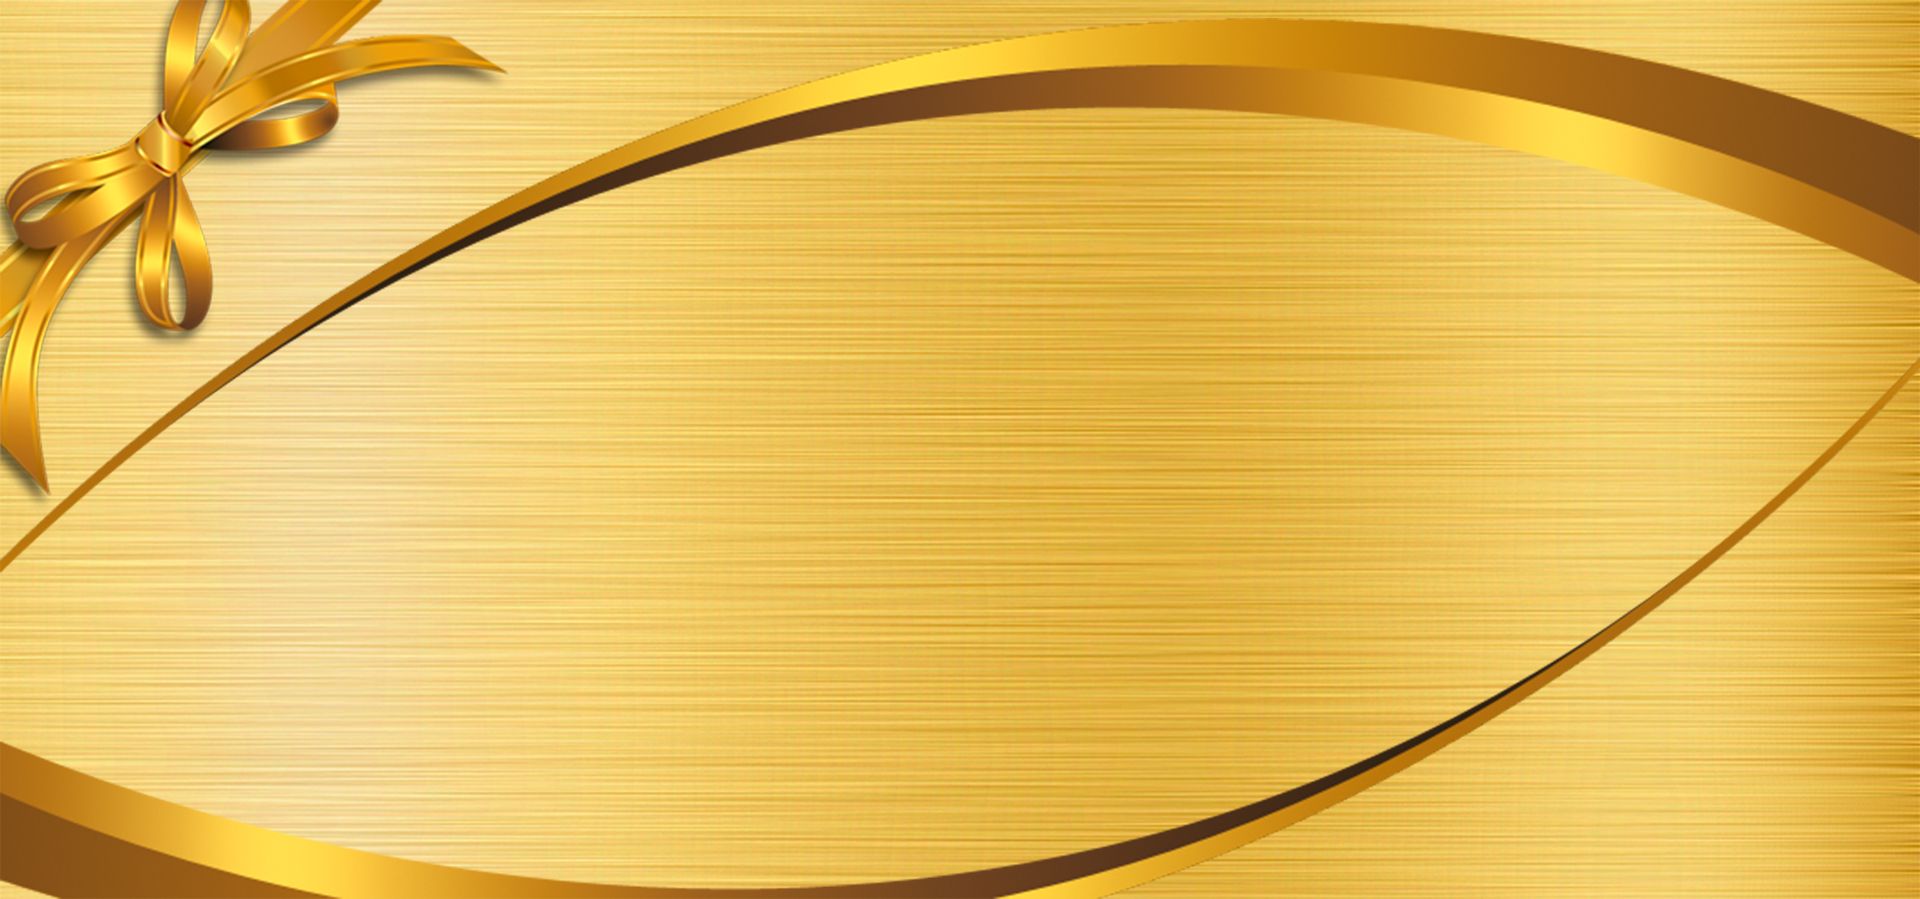 Hình Nền Dòng Màu Vàng Nền HD và Nền Cờ đẹp vàng nền vàng đường nét để  Tải Xuống Miễn Phí  Lovepik